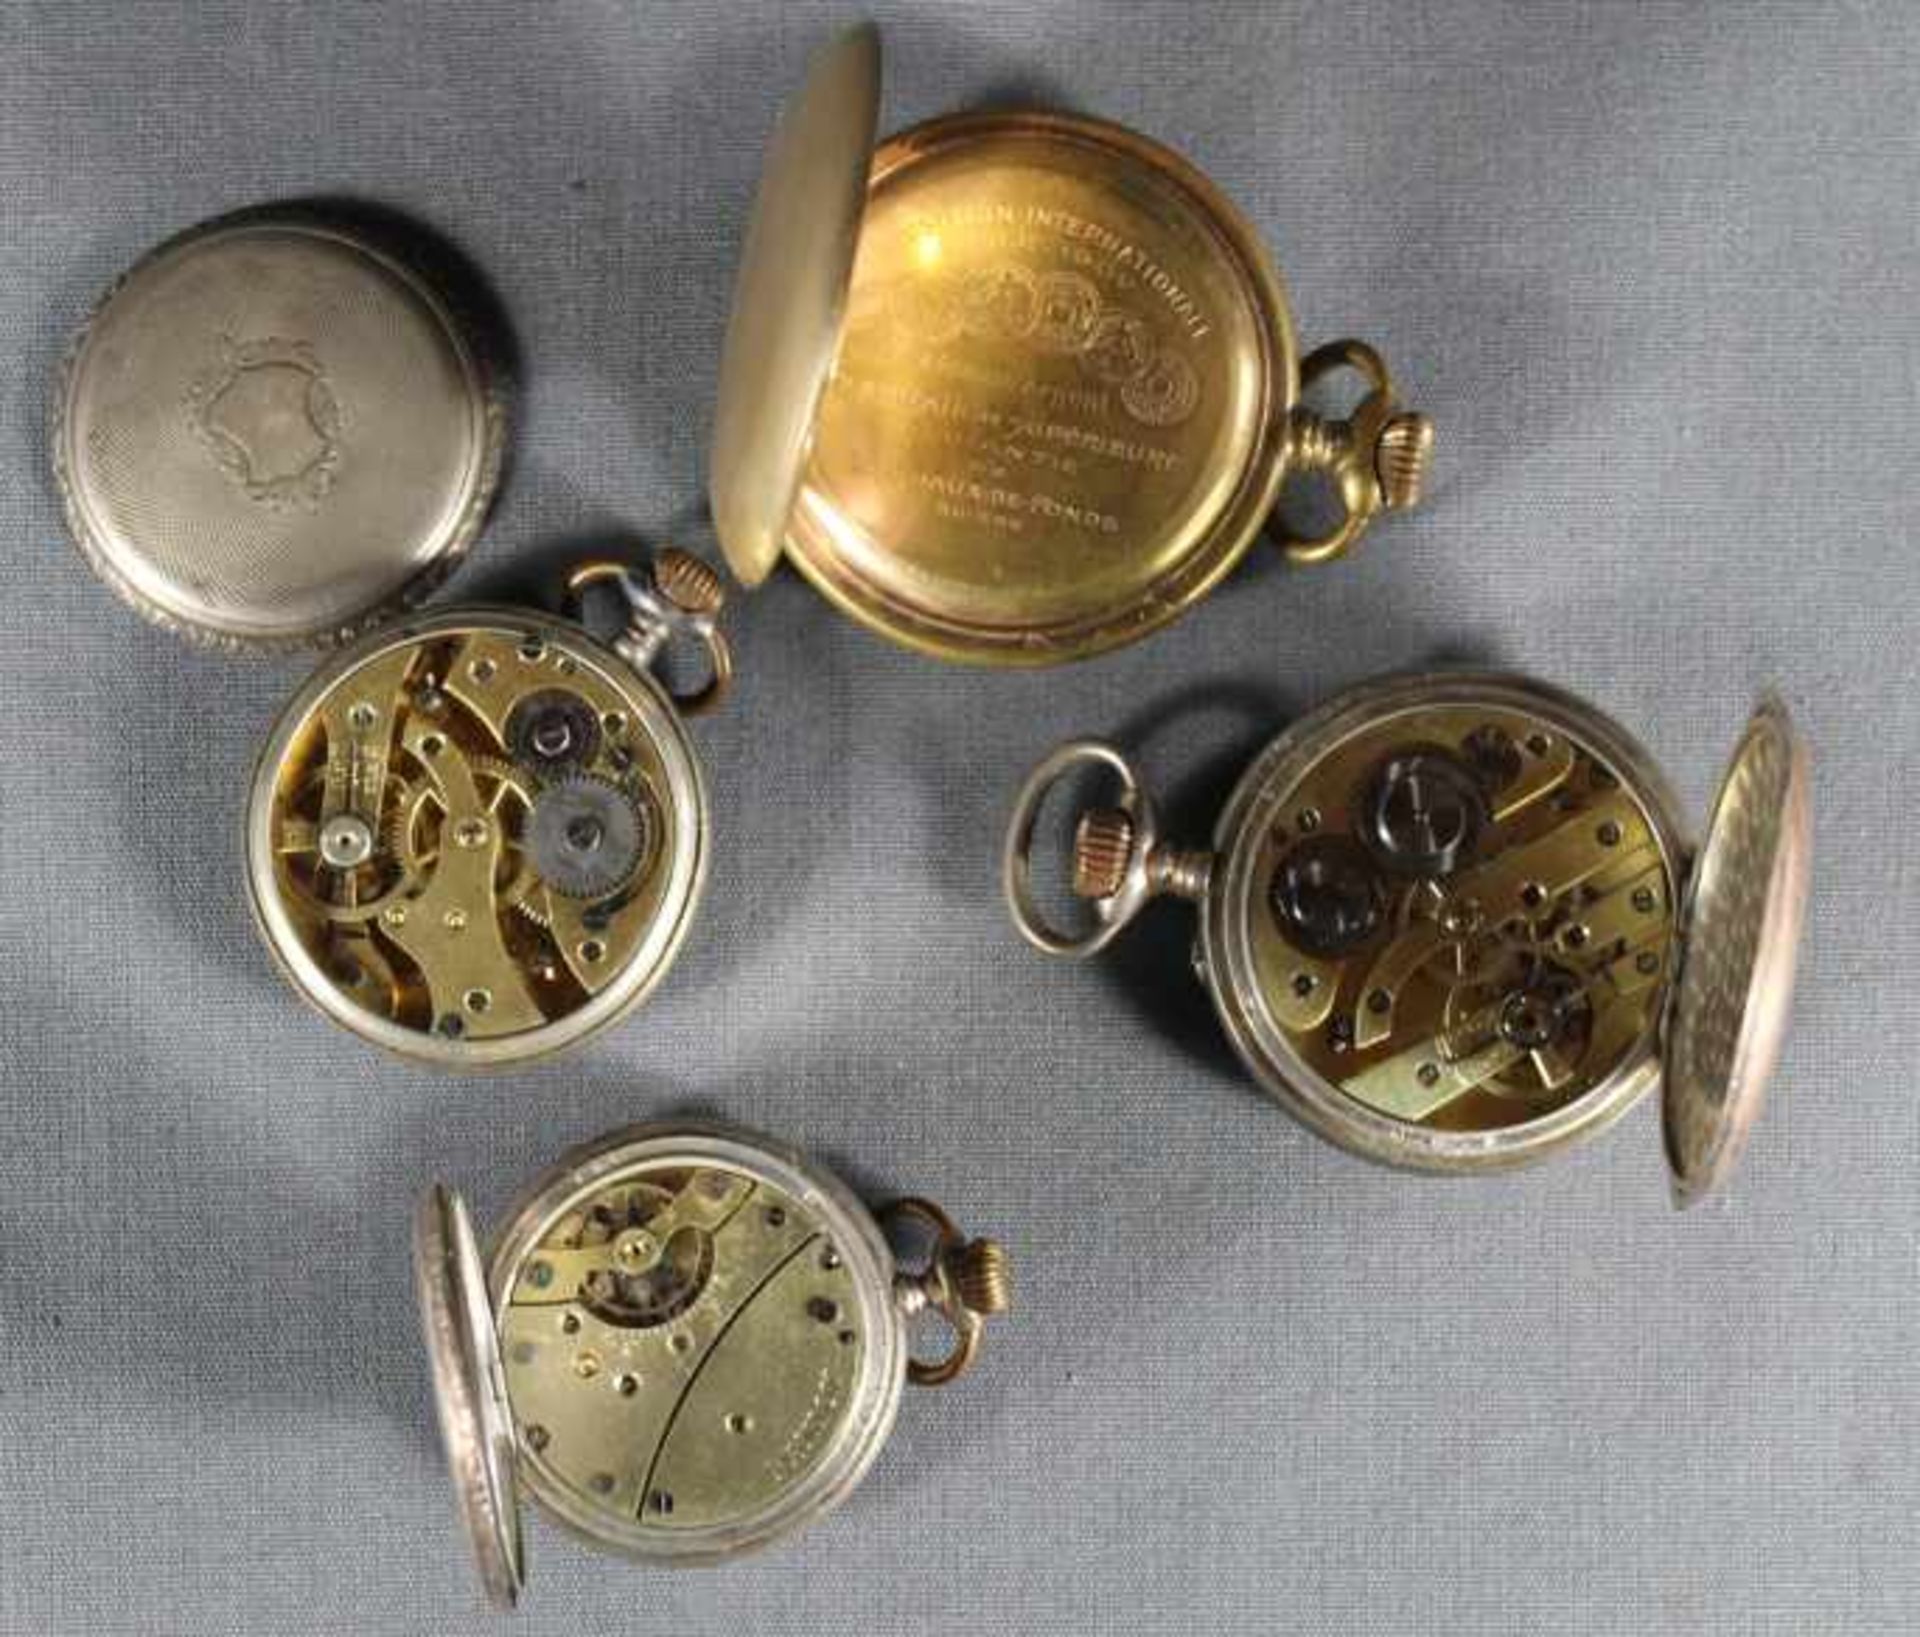 4 Taschenuhren Silber etc., punziert, verzierte Gehäuse, u.a. Rugby Watch, alle Uhren beschädigt, - Image 3 of 3